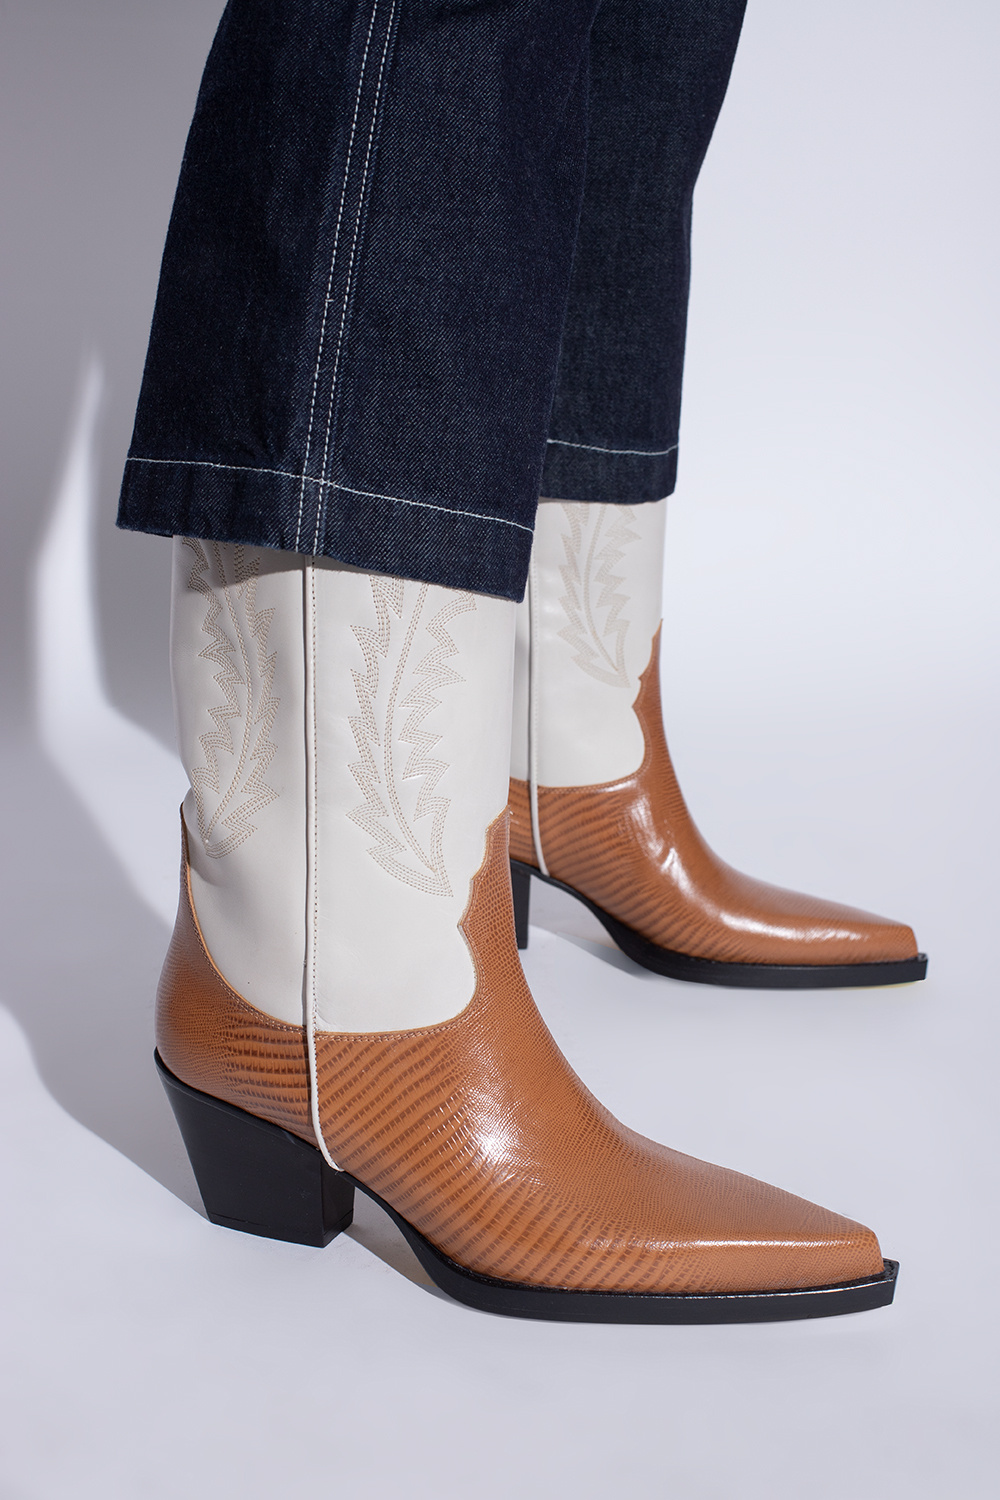 Paris Texas ‘El Dorado’ leather cowboy boots